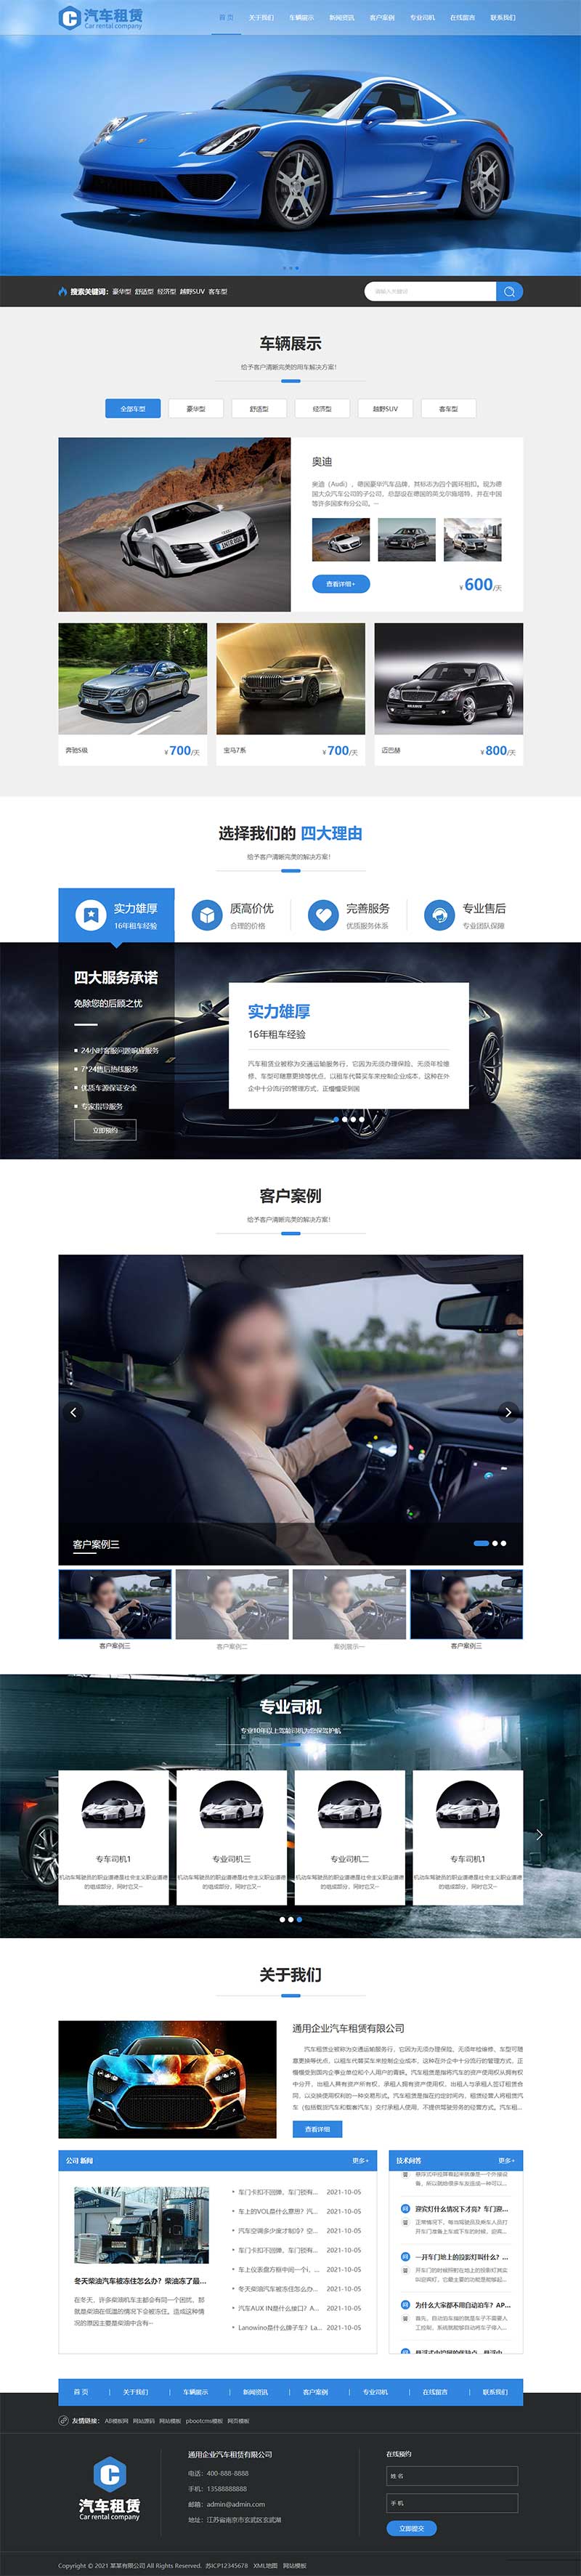 (自适应手机端)html5响应式汽车租赁服务公司网站源码电脑端展示图片